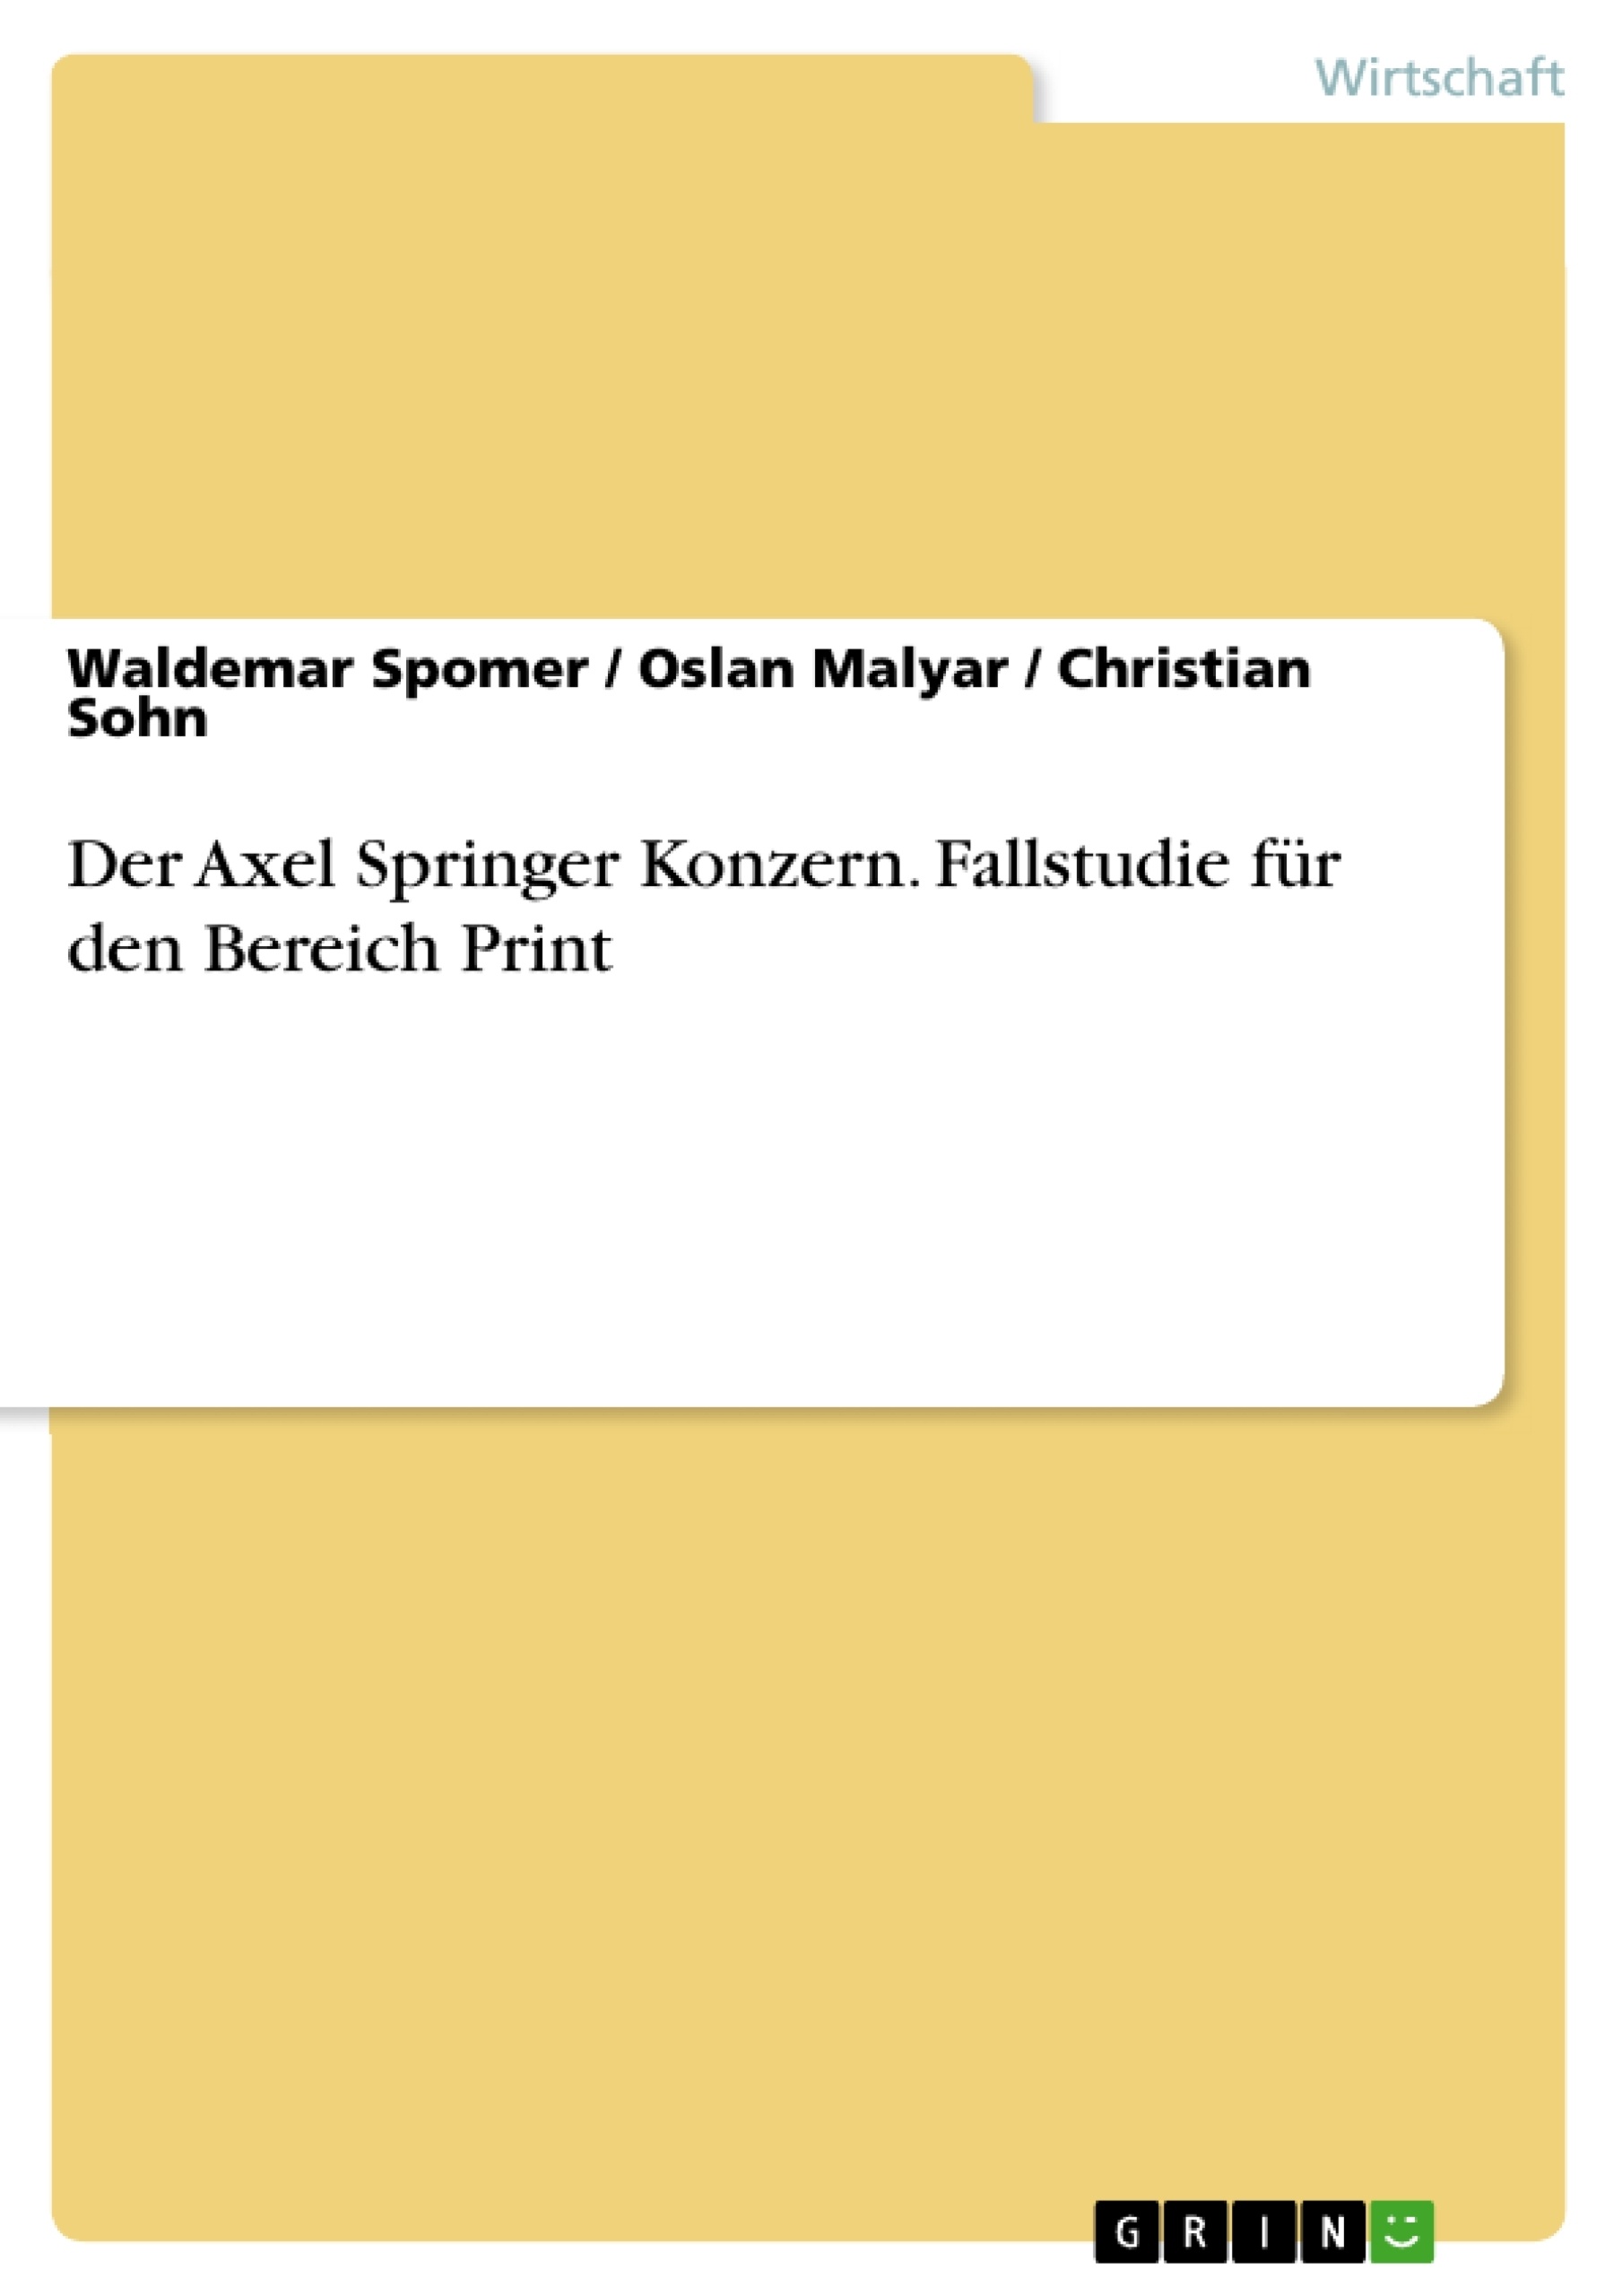 Título: Der Axel Springer Konzern. Fallstudie für den Bereich Print